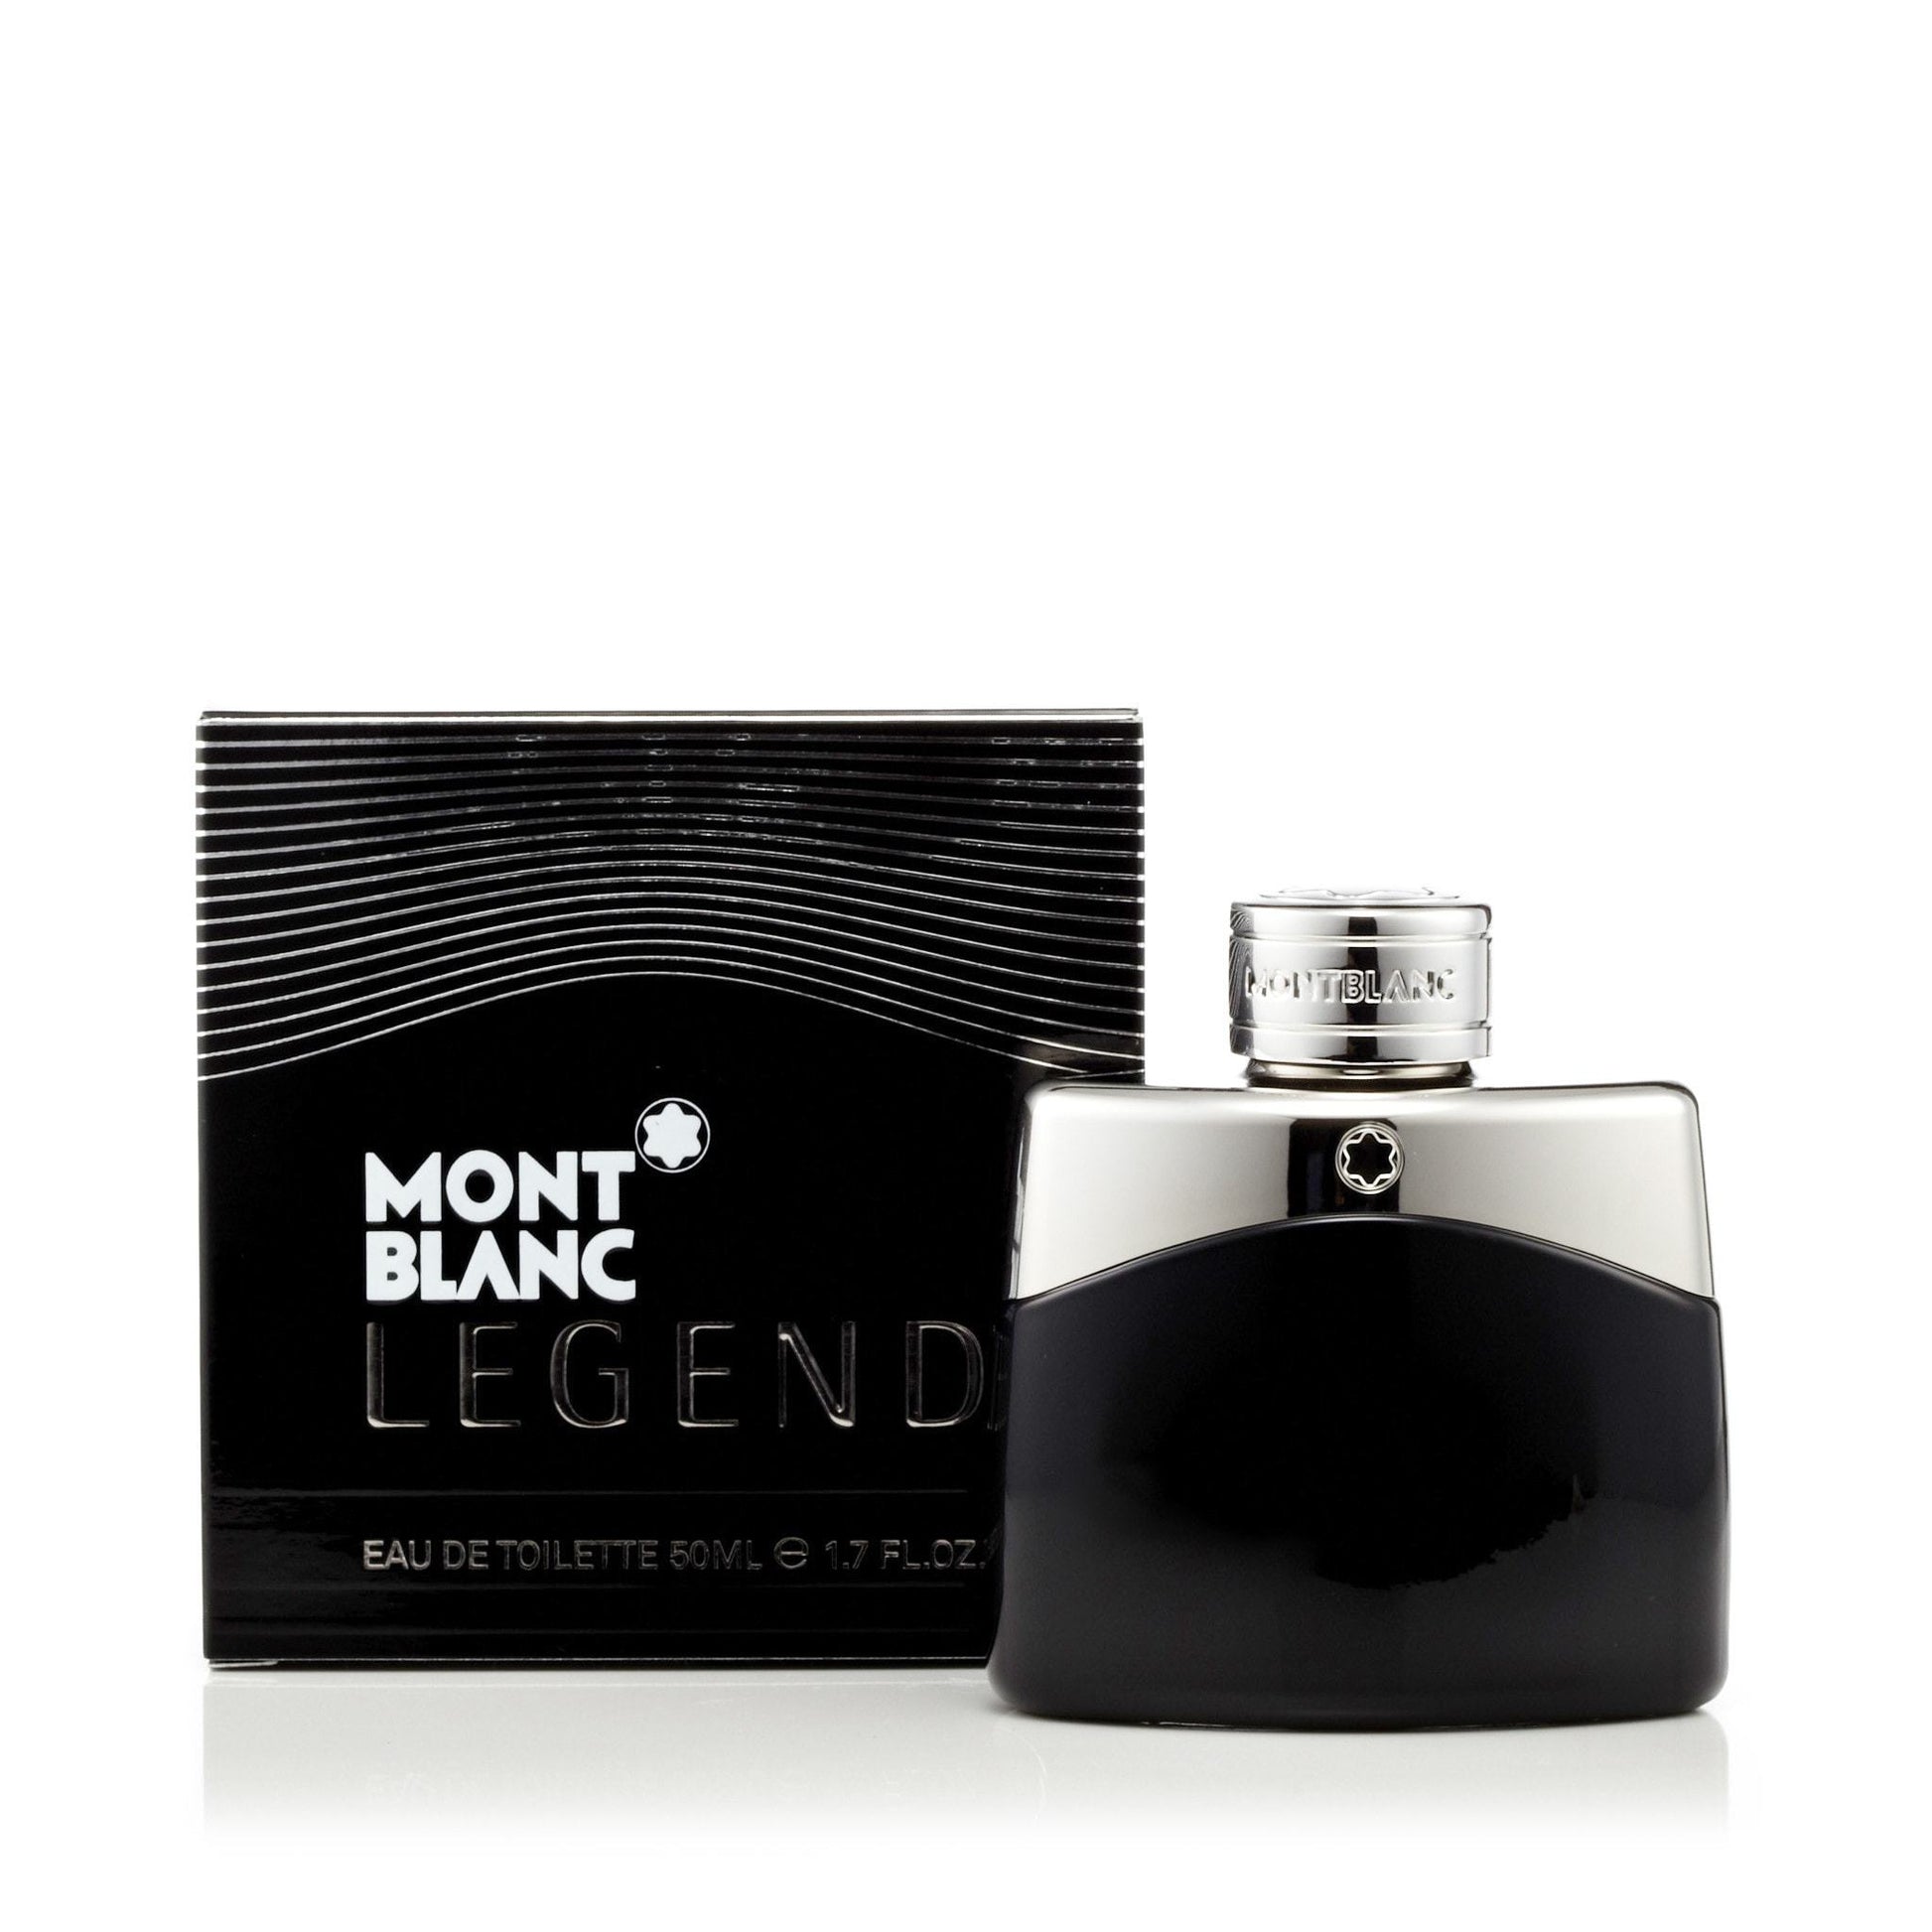 Legend Eau de Toilette Spray for Men by Montblanc, Product image 8